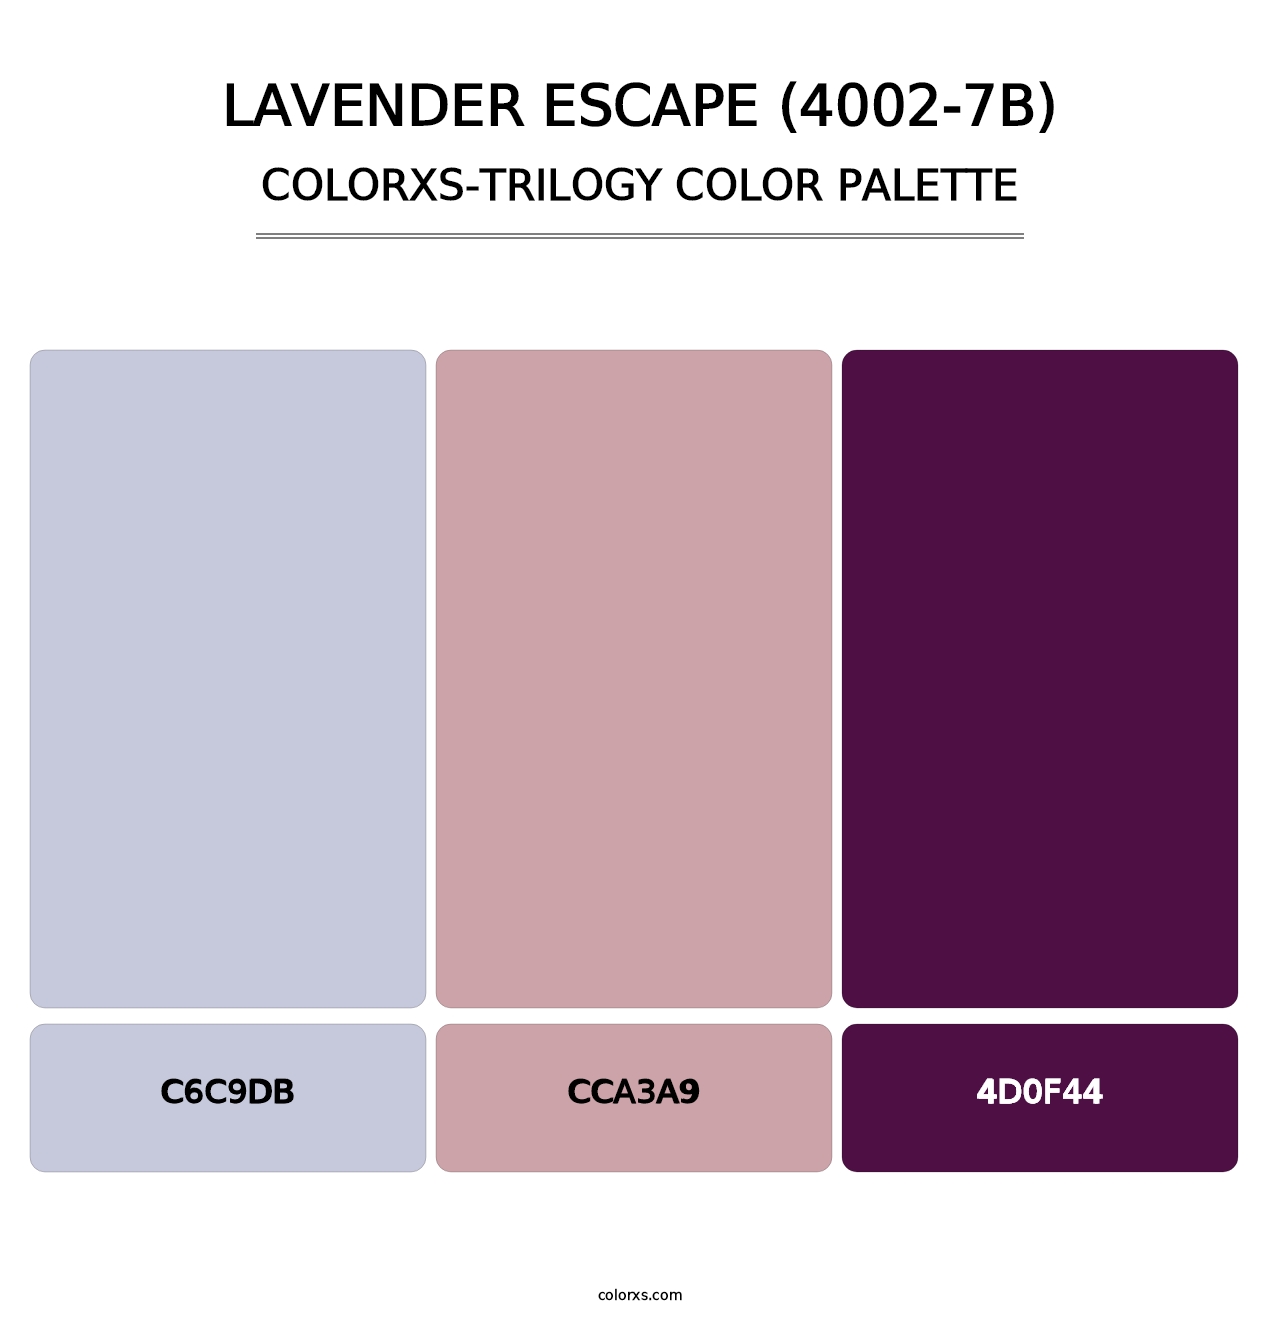 Lavender Escape (4002-7B) - Colorxs Trilogy Palette